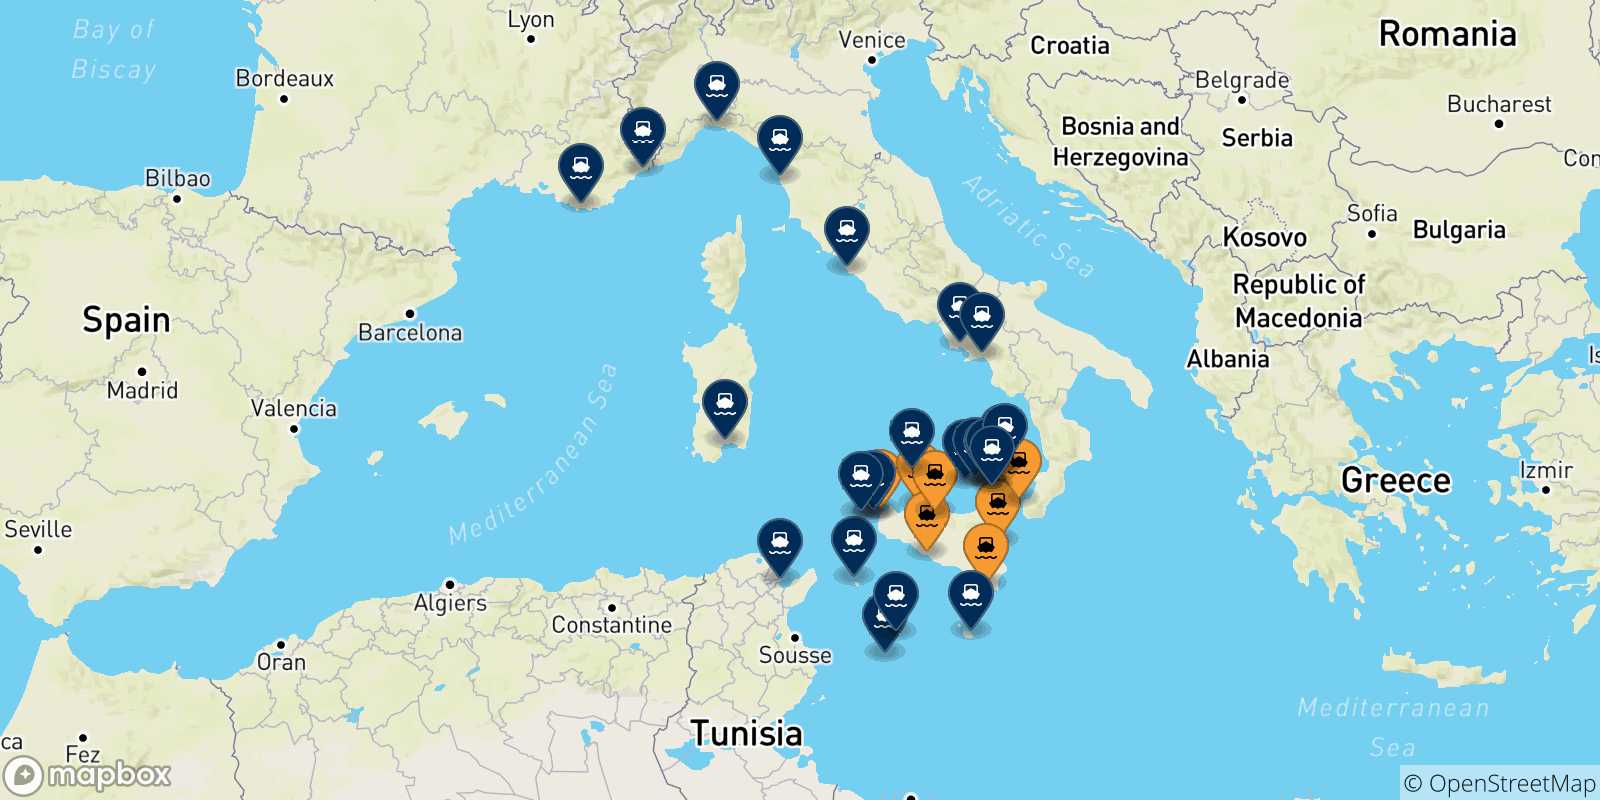 Mappa delle destinazioni raggiungibili dalla Sicilia